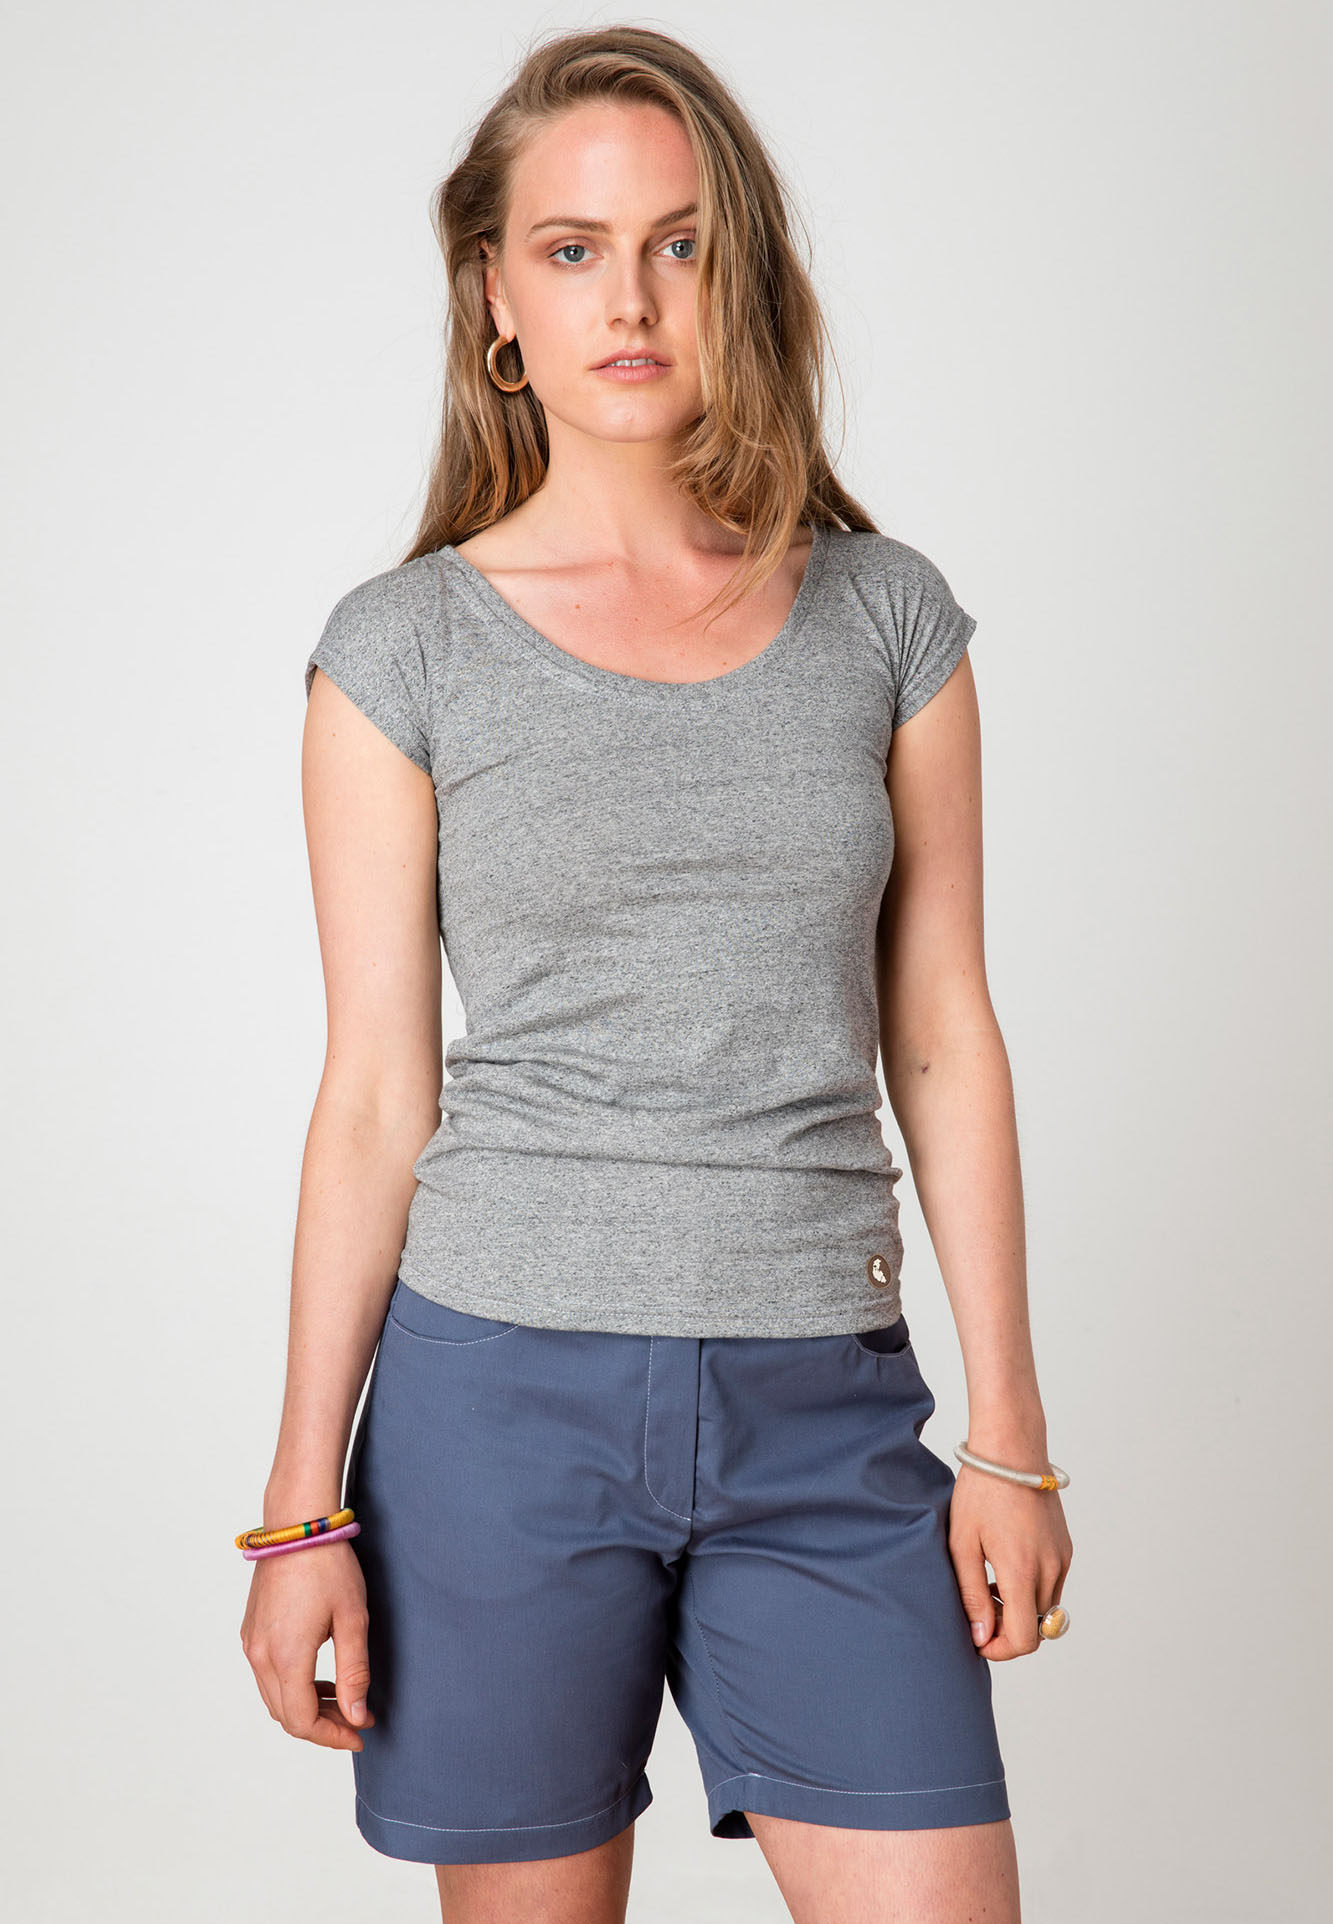 KJbnAuHT1iw_t-shirt-ecclo-gris-echancre-femme-Made-in-France-et-coton-upcycle-recycle-desimpacte-edition-limitee-face-1-Zalando.jpg